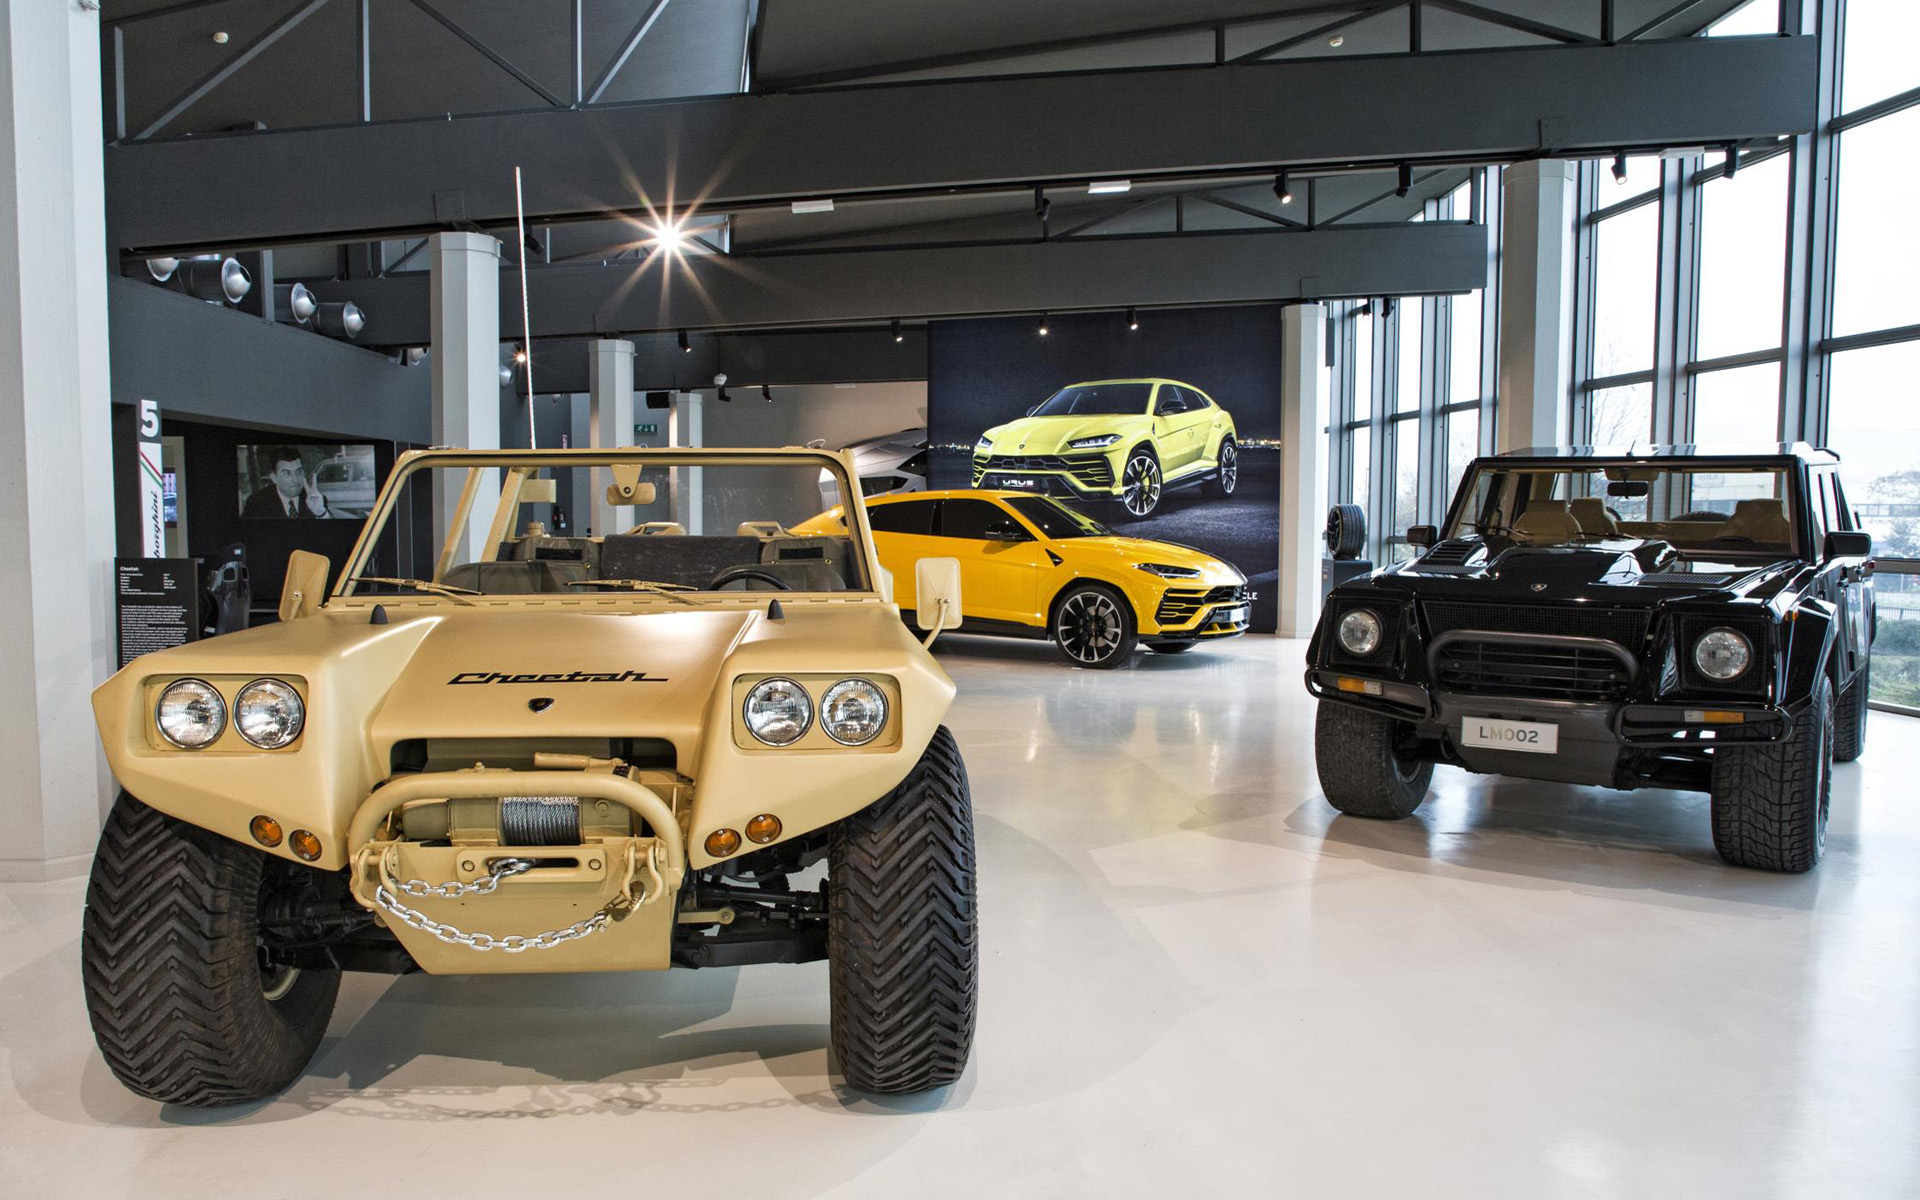 Ρεκόρ επισκέψεων το 2017 στο μουσείο της Lamborghini